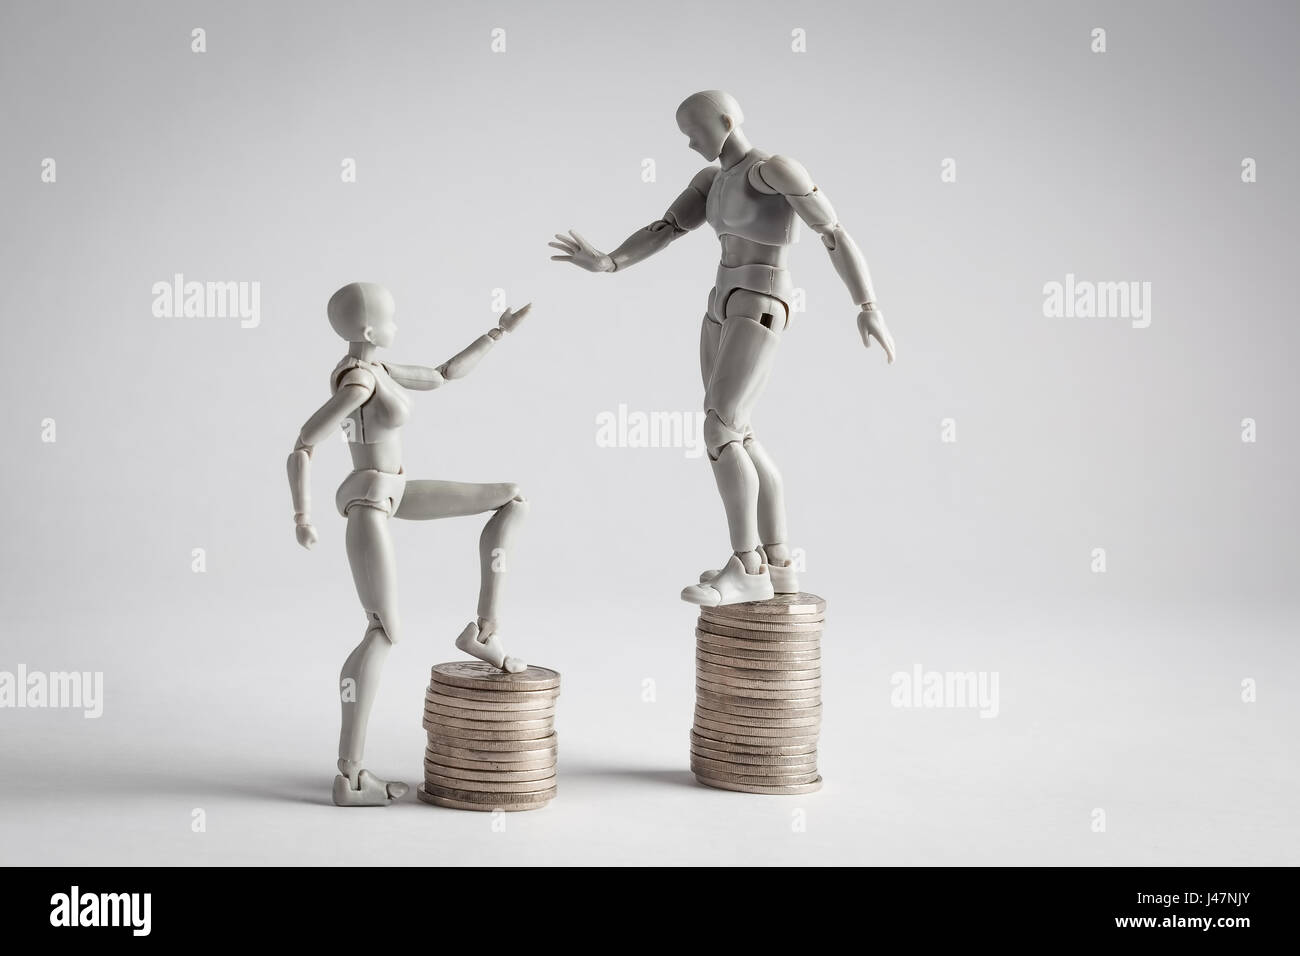 Einkommen Ungleichheit-Konzept mit realistischen männliche und weibliche Figurinen und Haufen von Münzen gezeigt. Weibliche Figur, die Hand in Richtung männlich Erweiterung Stockfoto